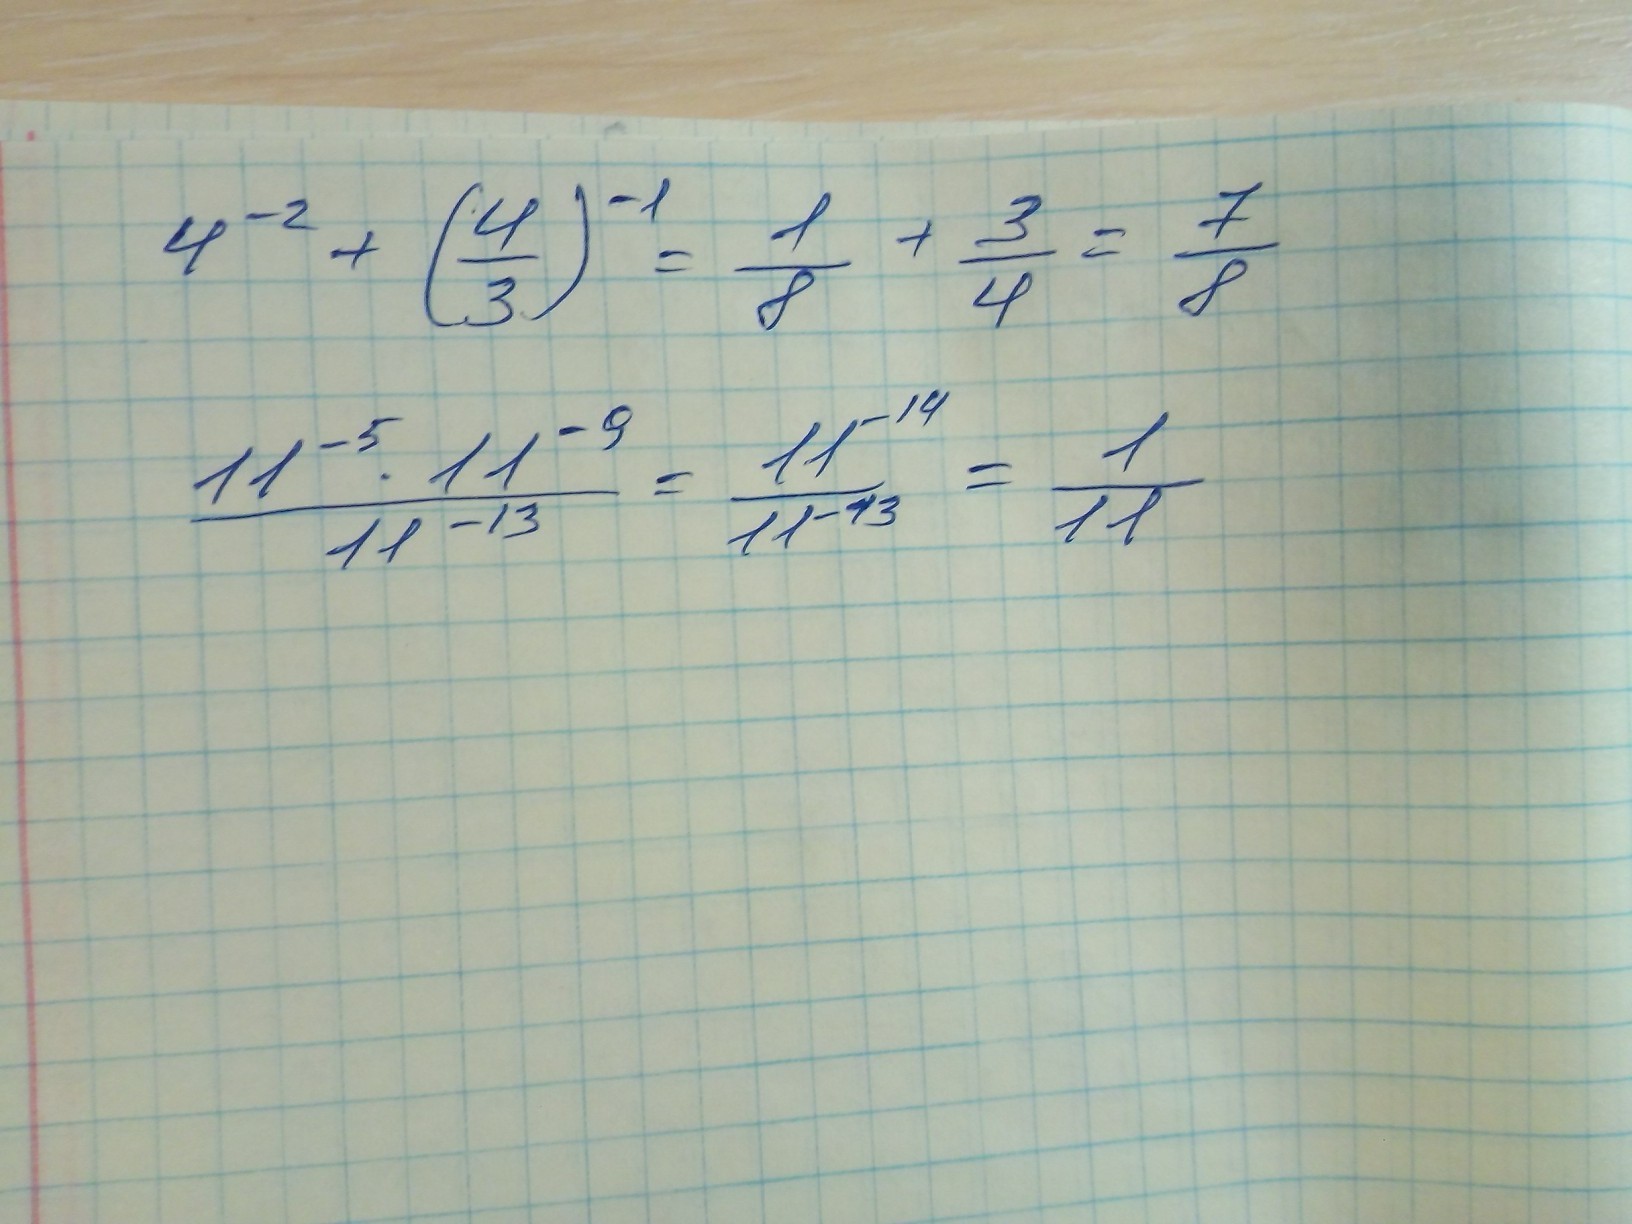 Около 11 5 13 5. Найдите значение выражения 4-2+(4/3)-1. Найти значение выражения 11/5+13/4. 1/4-(1/4)2+(1/4). 4^-2+(4/3)^-1.